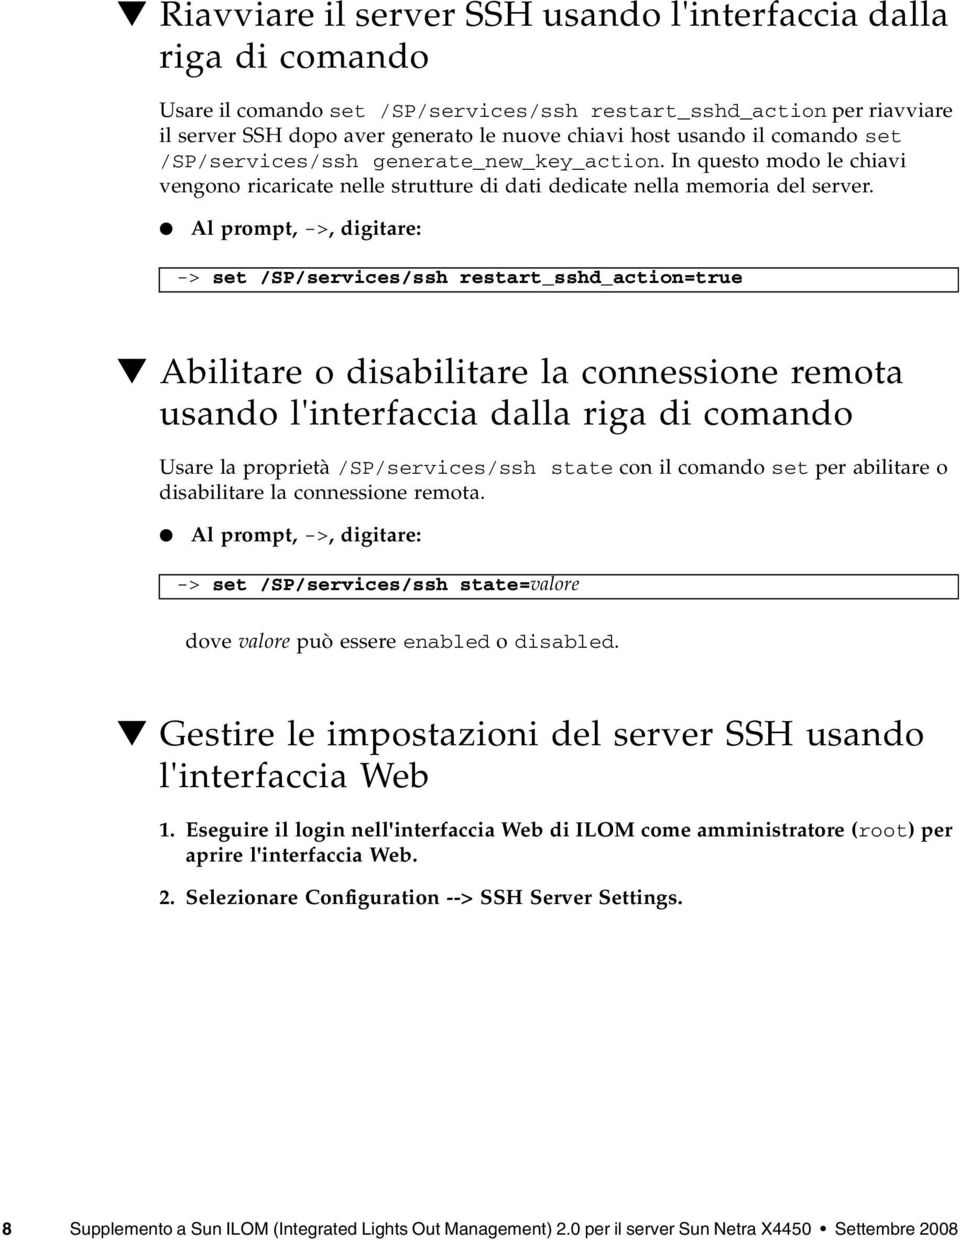 Al prompt, ->, digitare: -> set /SP/services/ssh restart_sshd_action=true Abilitare o disabilitare la connessione remota usando l'interfaccia dalla riga di comando Usare la proprietà /SP/services/ssh